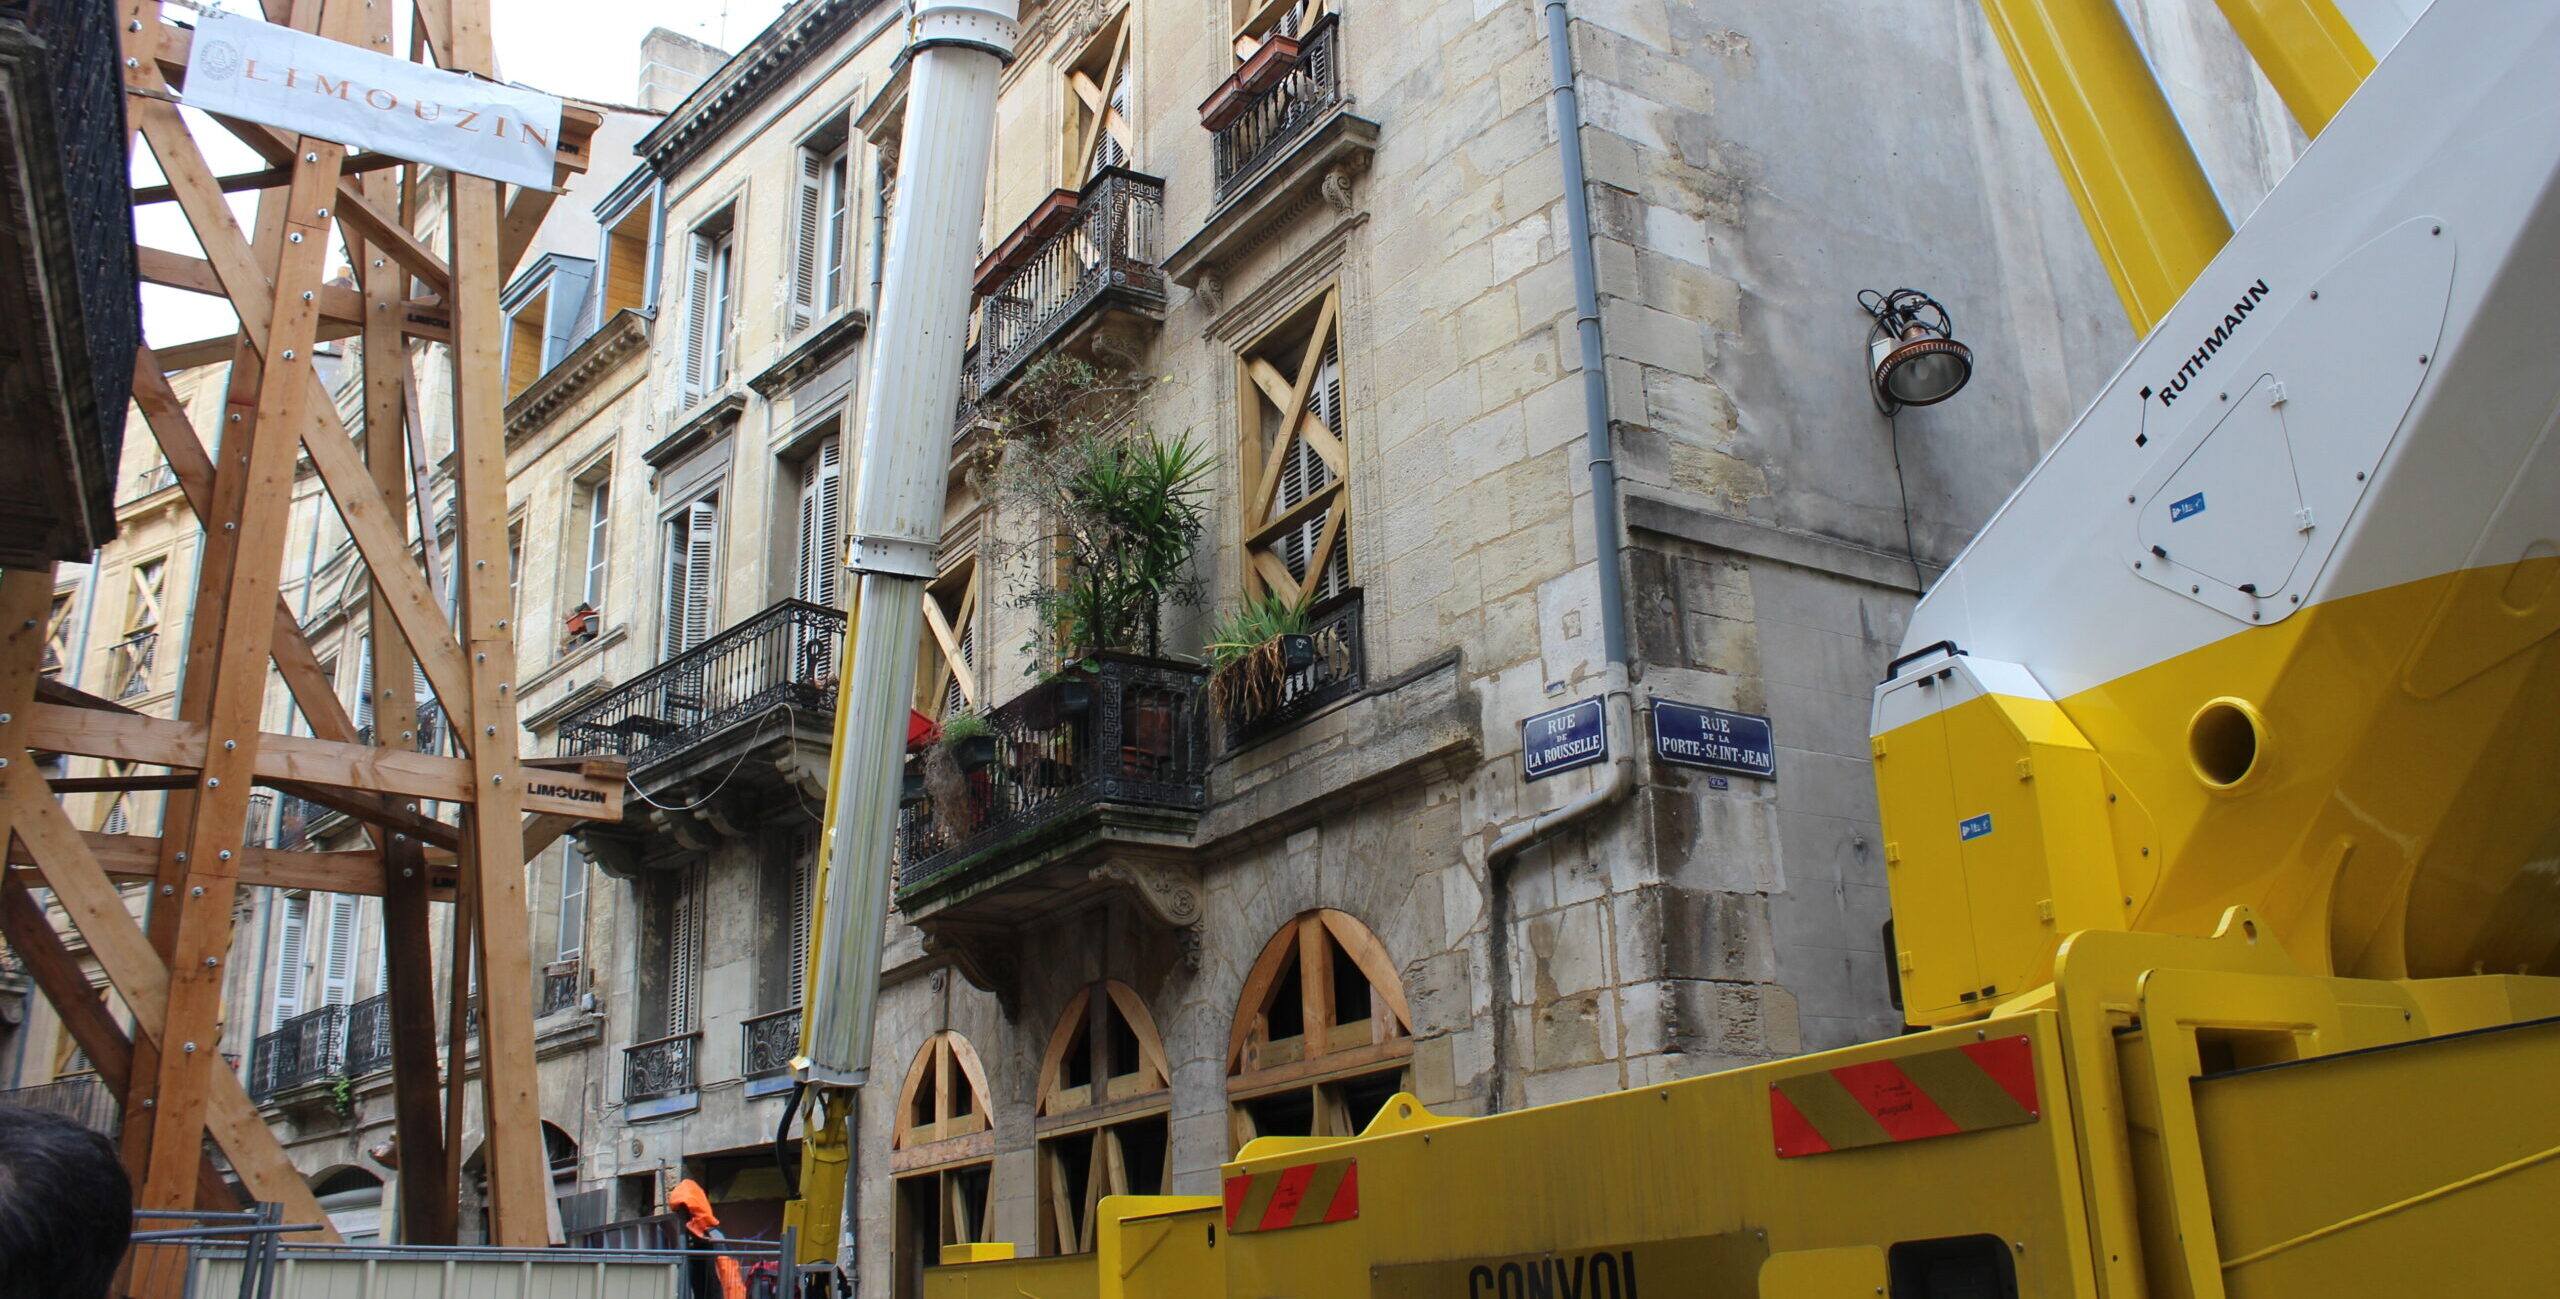 Effondrements d’immeubles à Bordeaux : un chantier en quête de preuves rue de la Rousselle